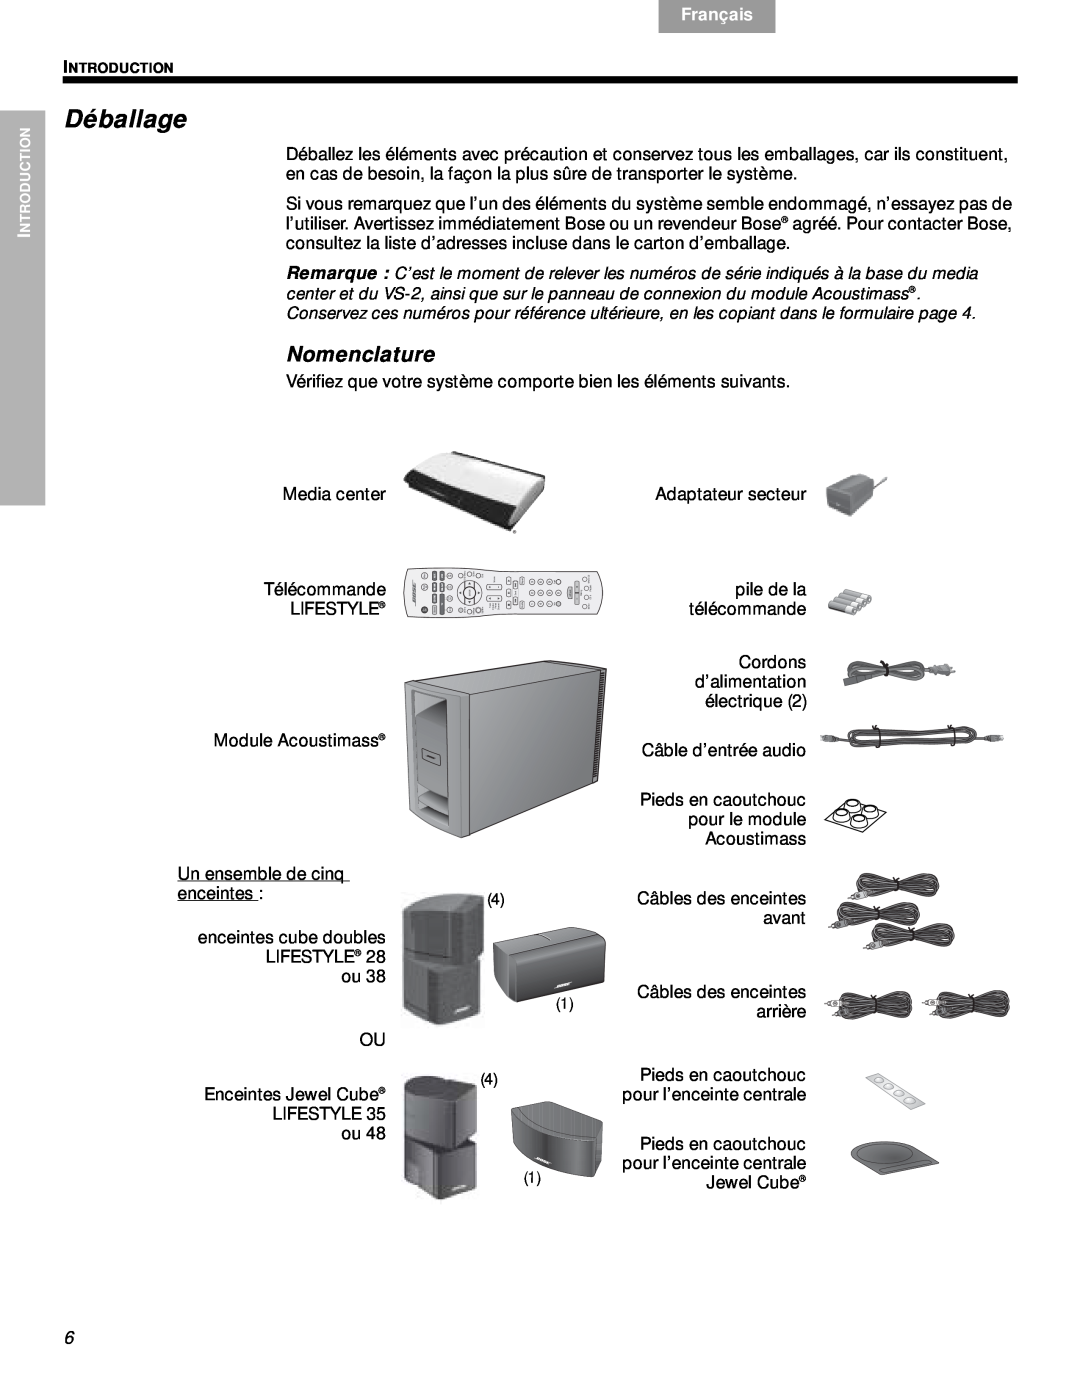 Bose VS-2 manual Déballage, Nomenclature, Media center, Adaptateur secteur, Télécommande, pile de la, télécommande, Svenska 